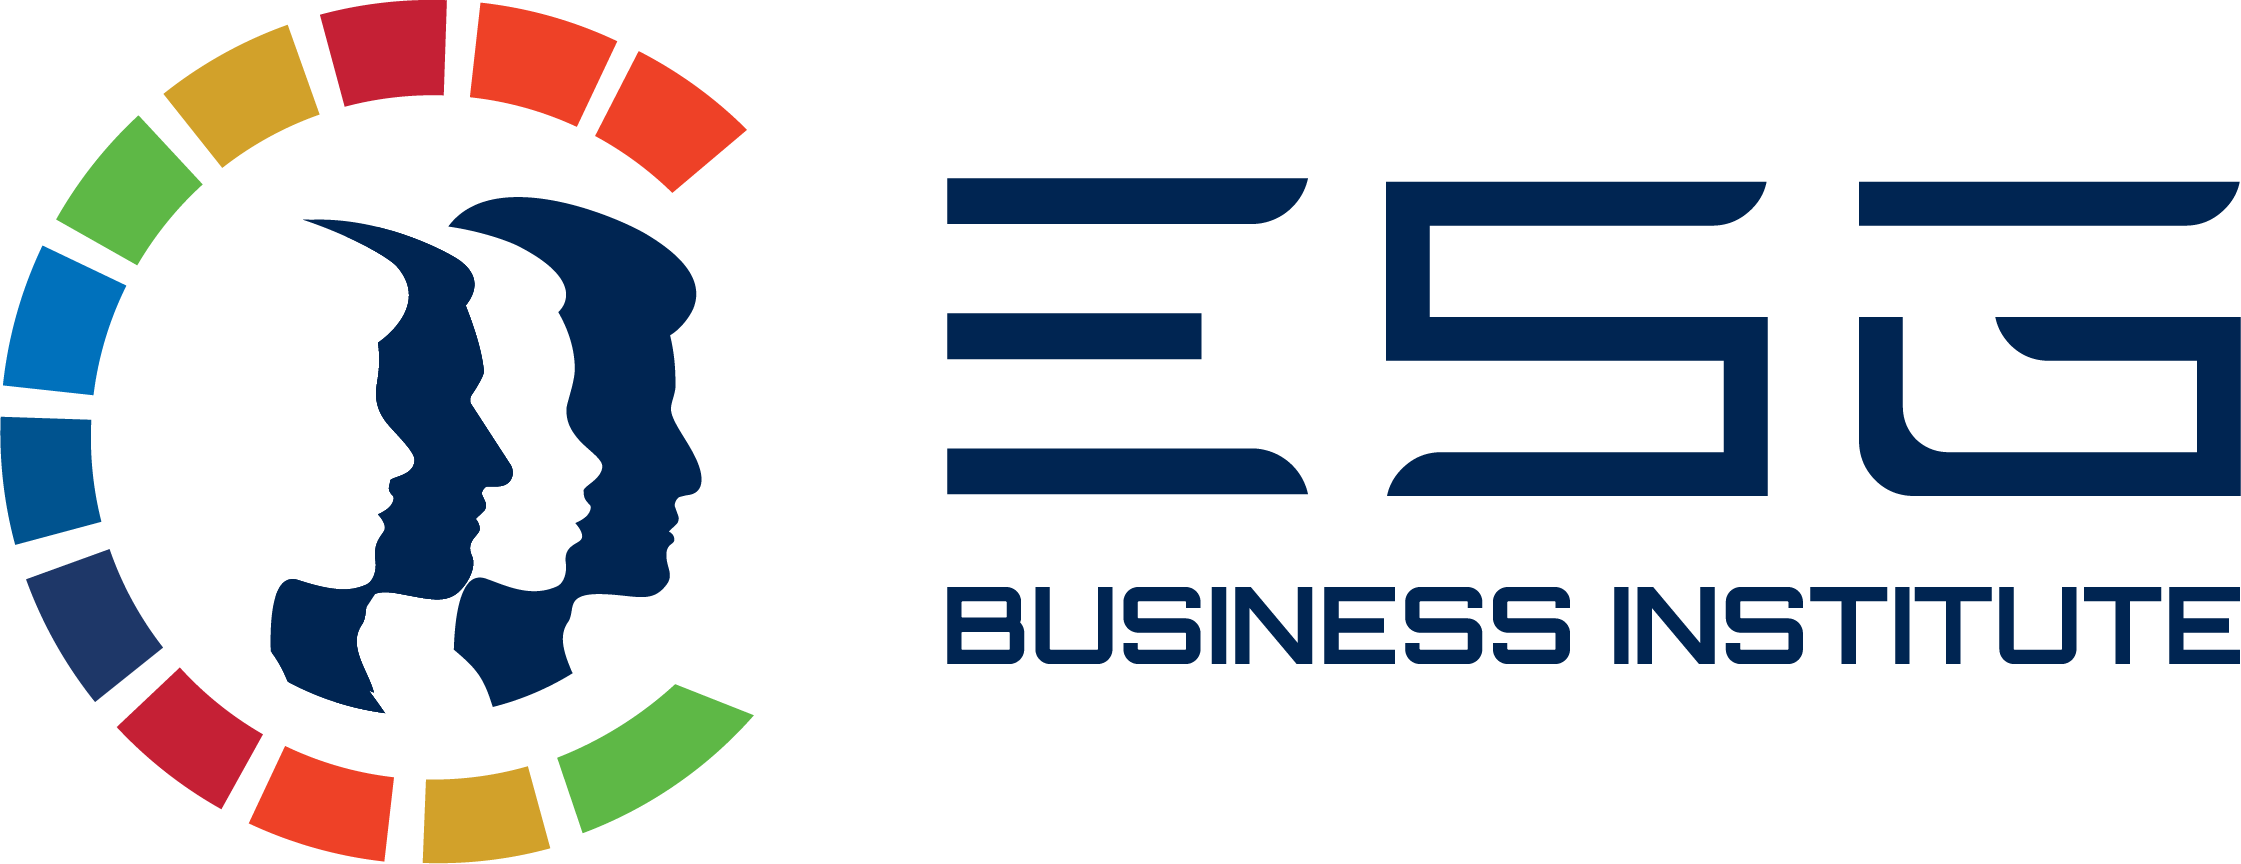 ESG Business Institute